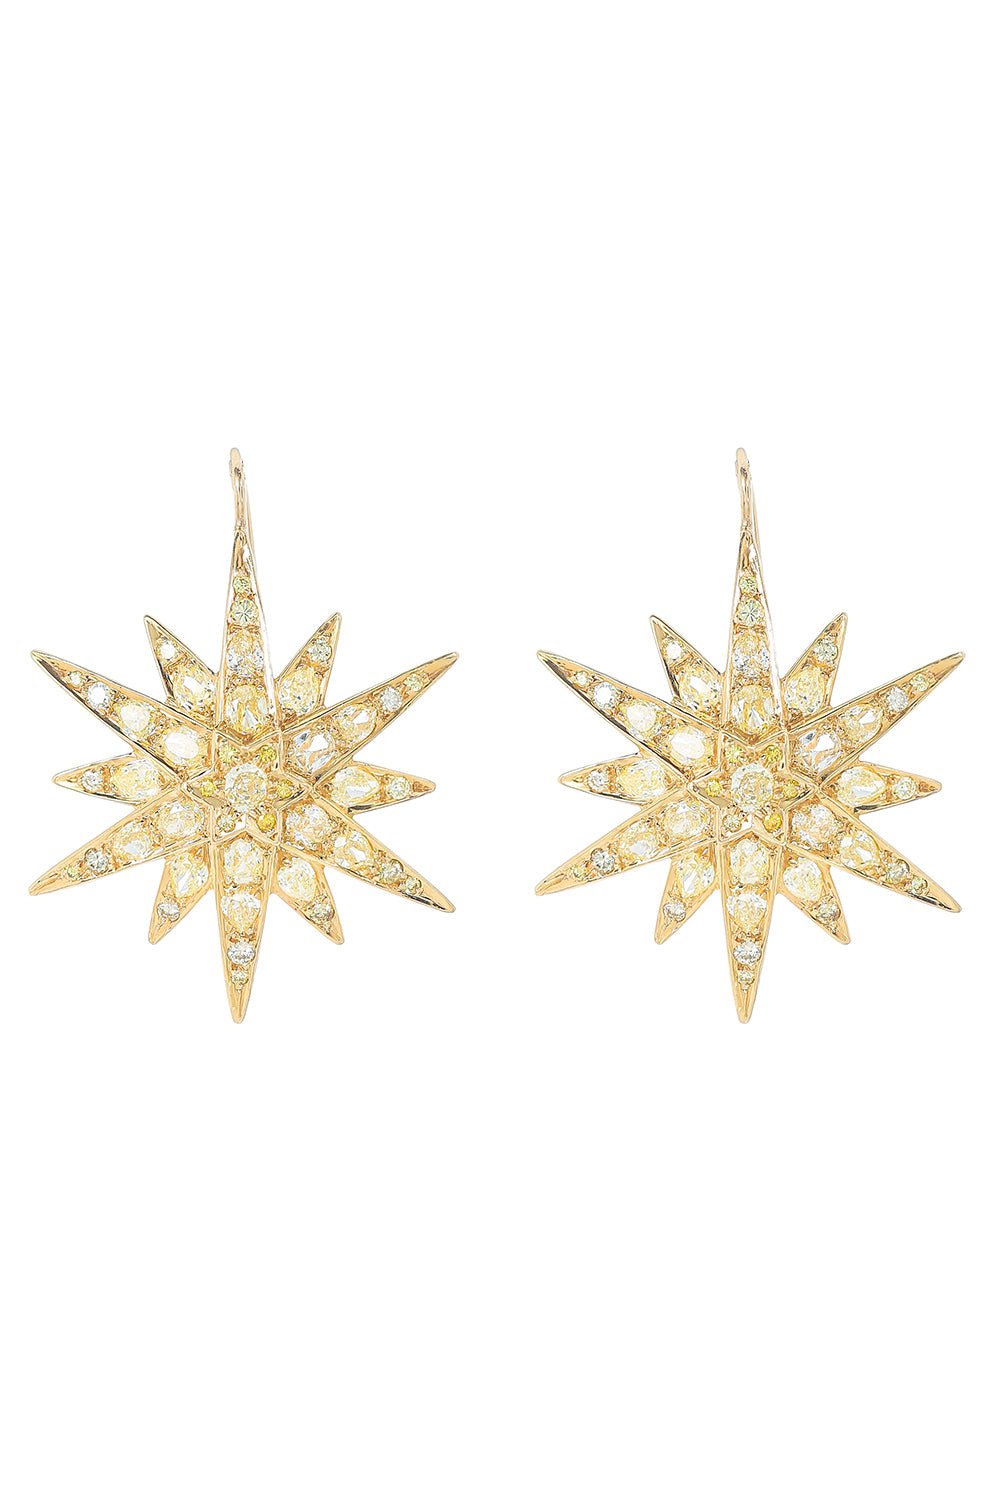 FRED LEIGHTON-Diamond Starburst Earrings-YELLOW GOLD